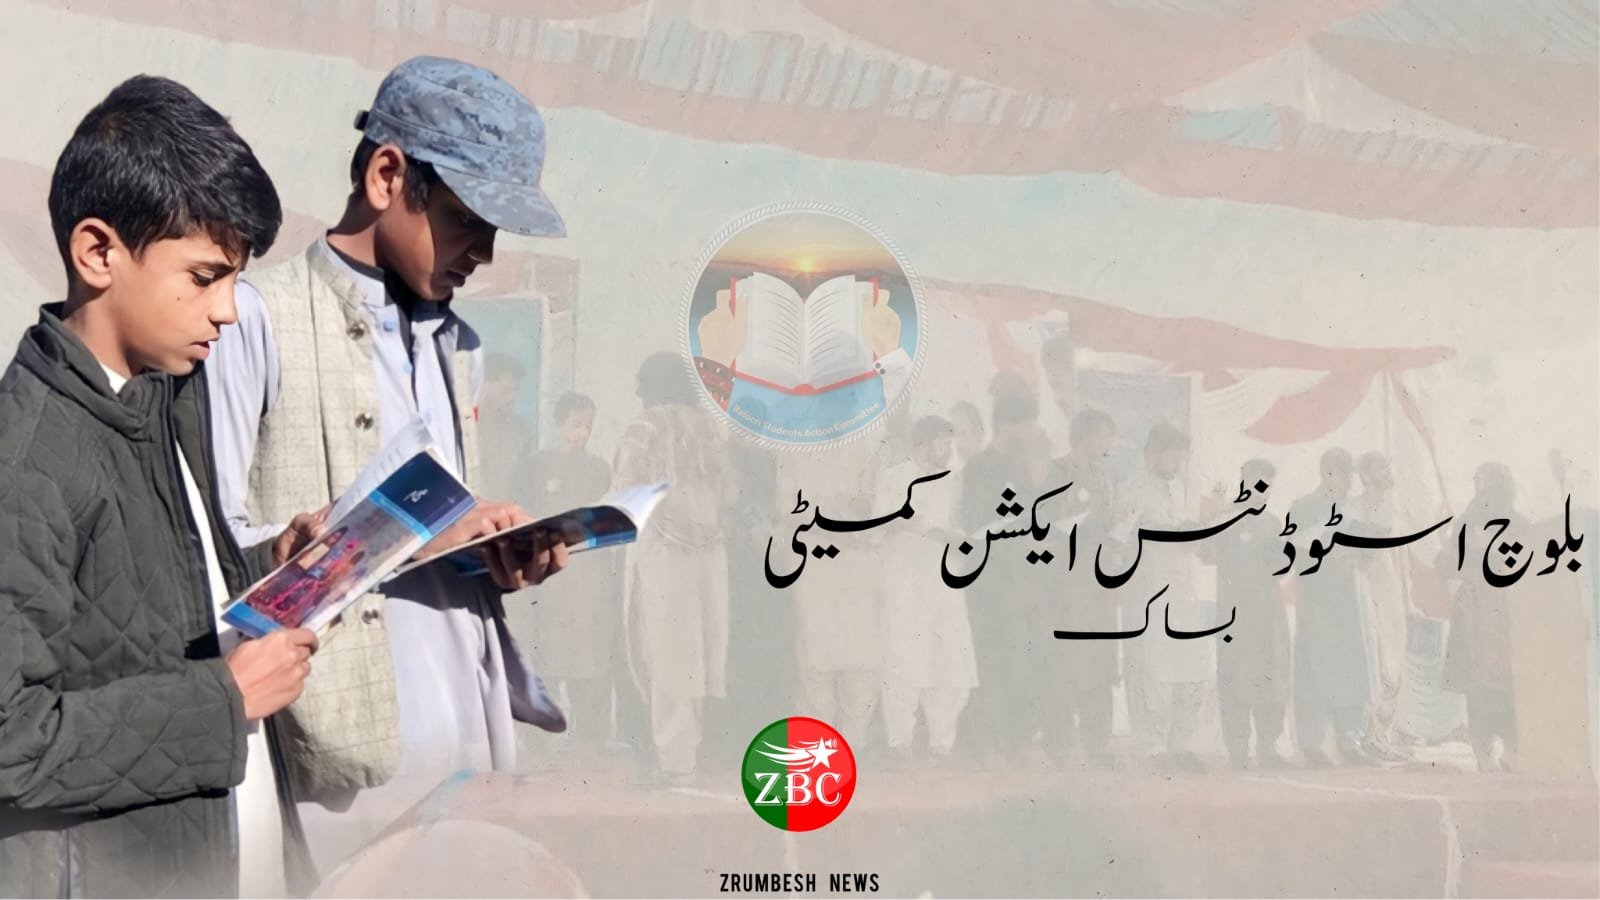 نئے سال کا آغاز بلوچستان کتاب کاروان کے نام سے منسوب کرتے ہوئے بلوچستان بھر میں کتاب میلے لگائے جائیں گے۔بساک